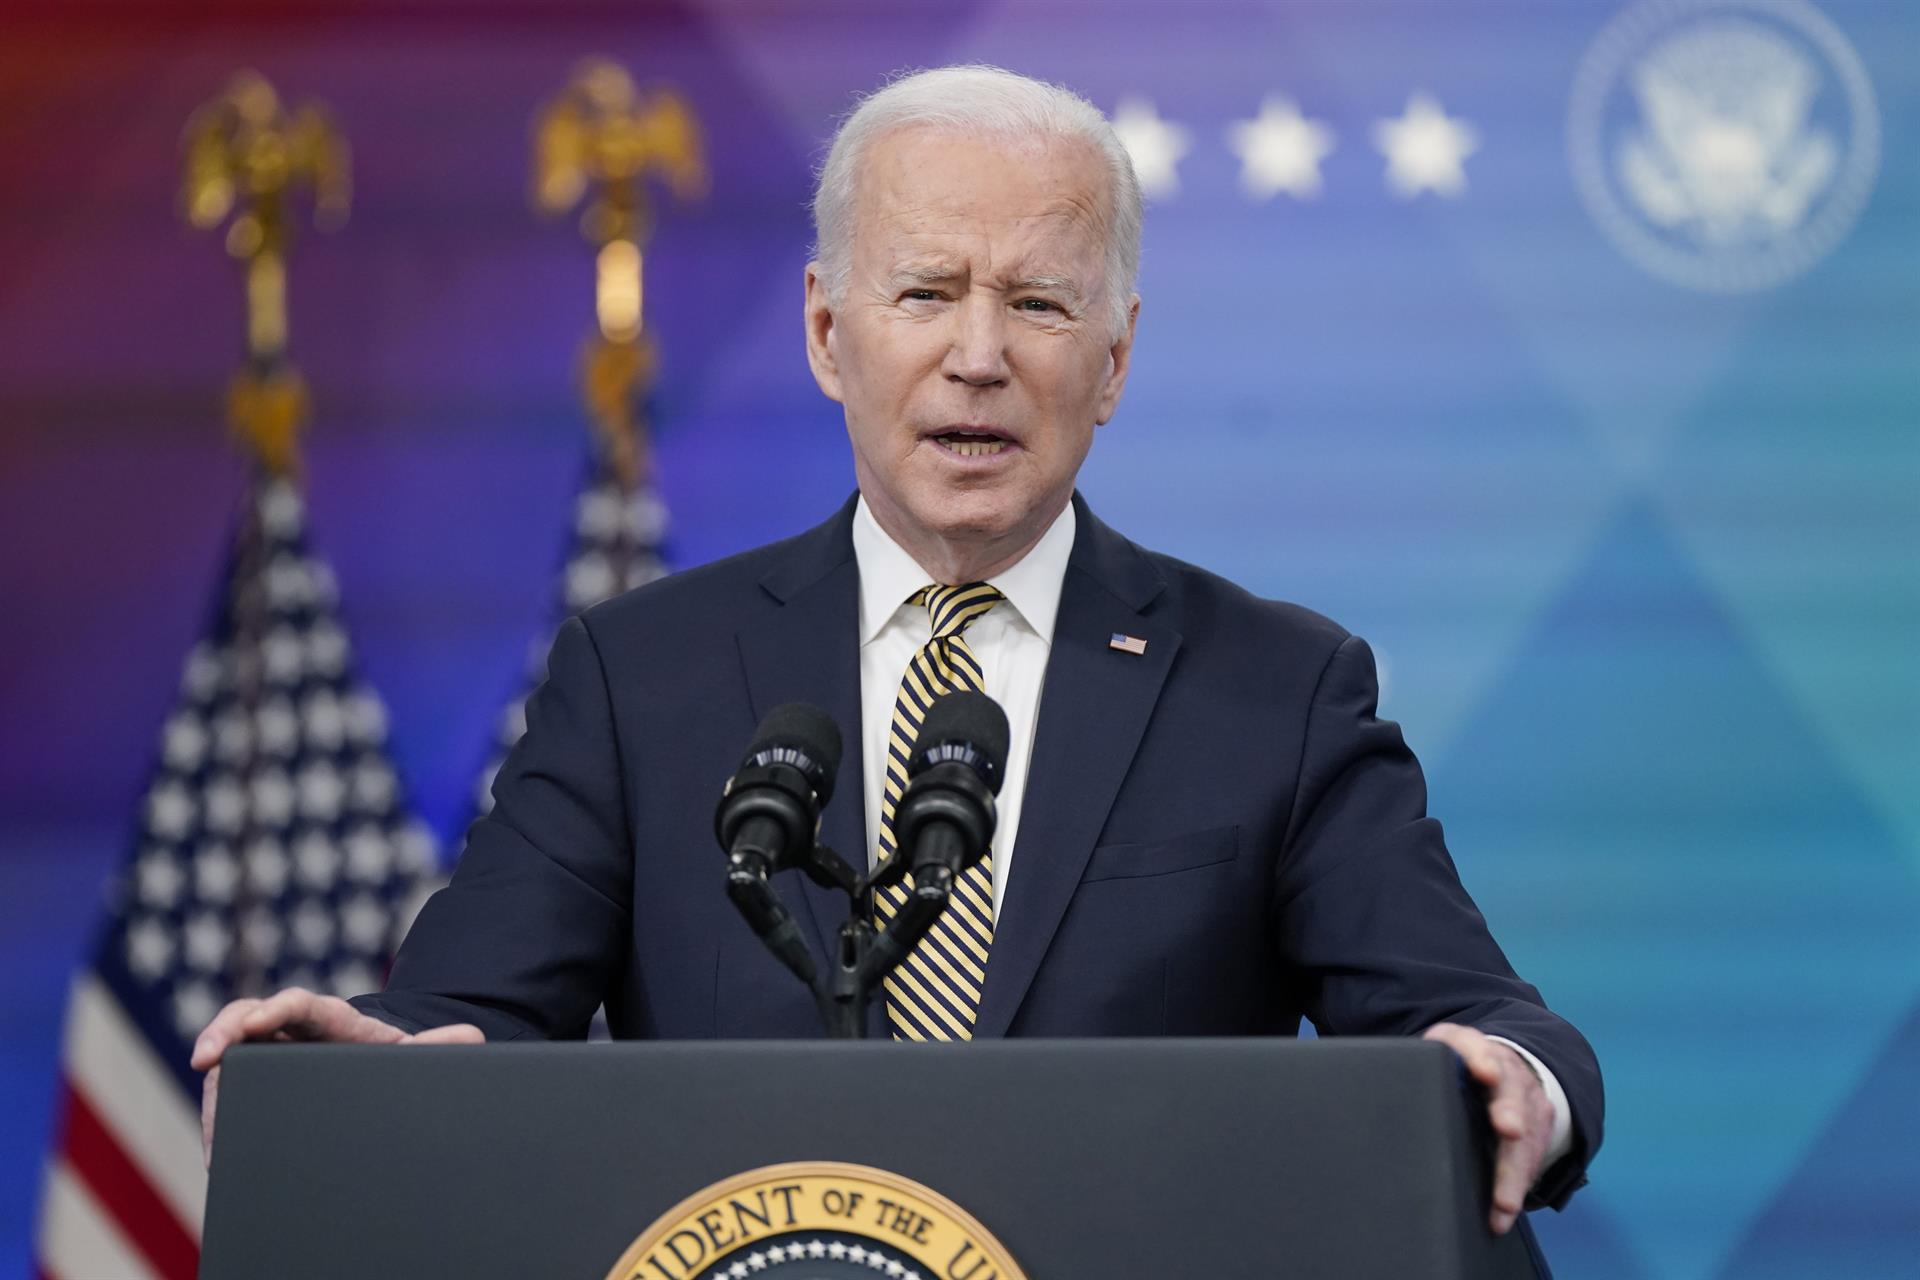 Biden anuncia el envío a Ucrania de drones estadounidenses